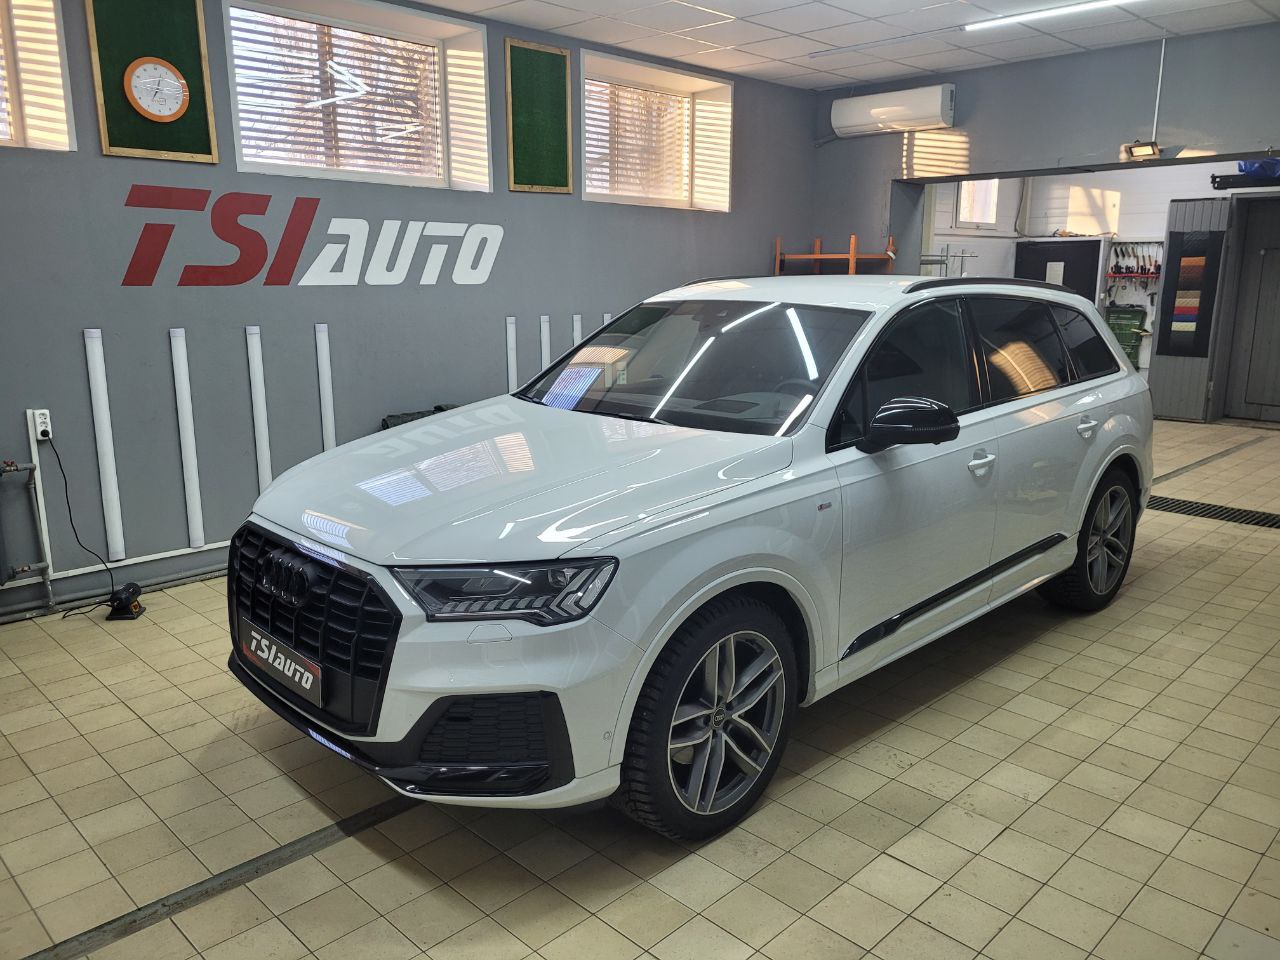 Шумоизоляция Audi Q7 с фотографиями и ценами выполненных работ с материалами Шумофф